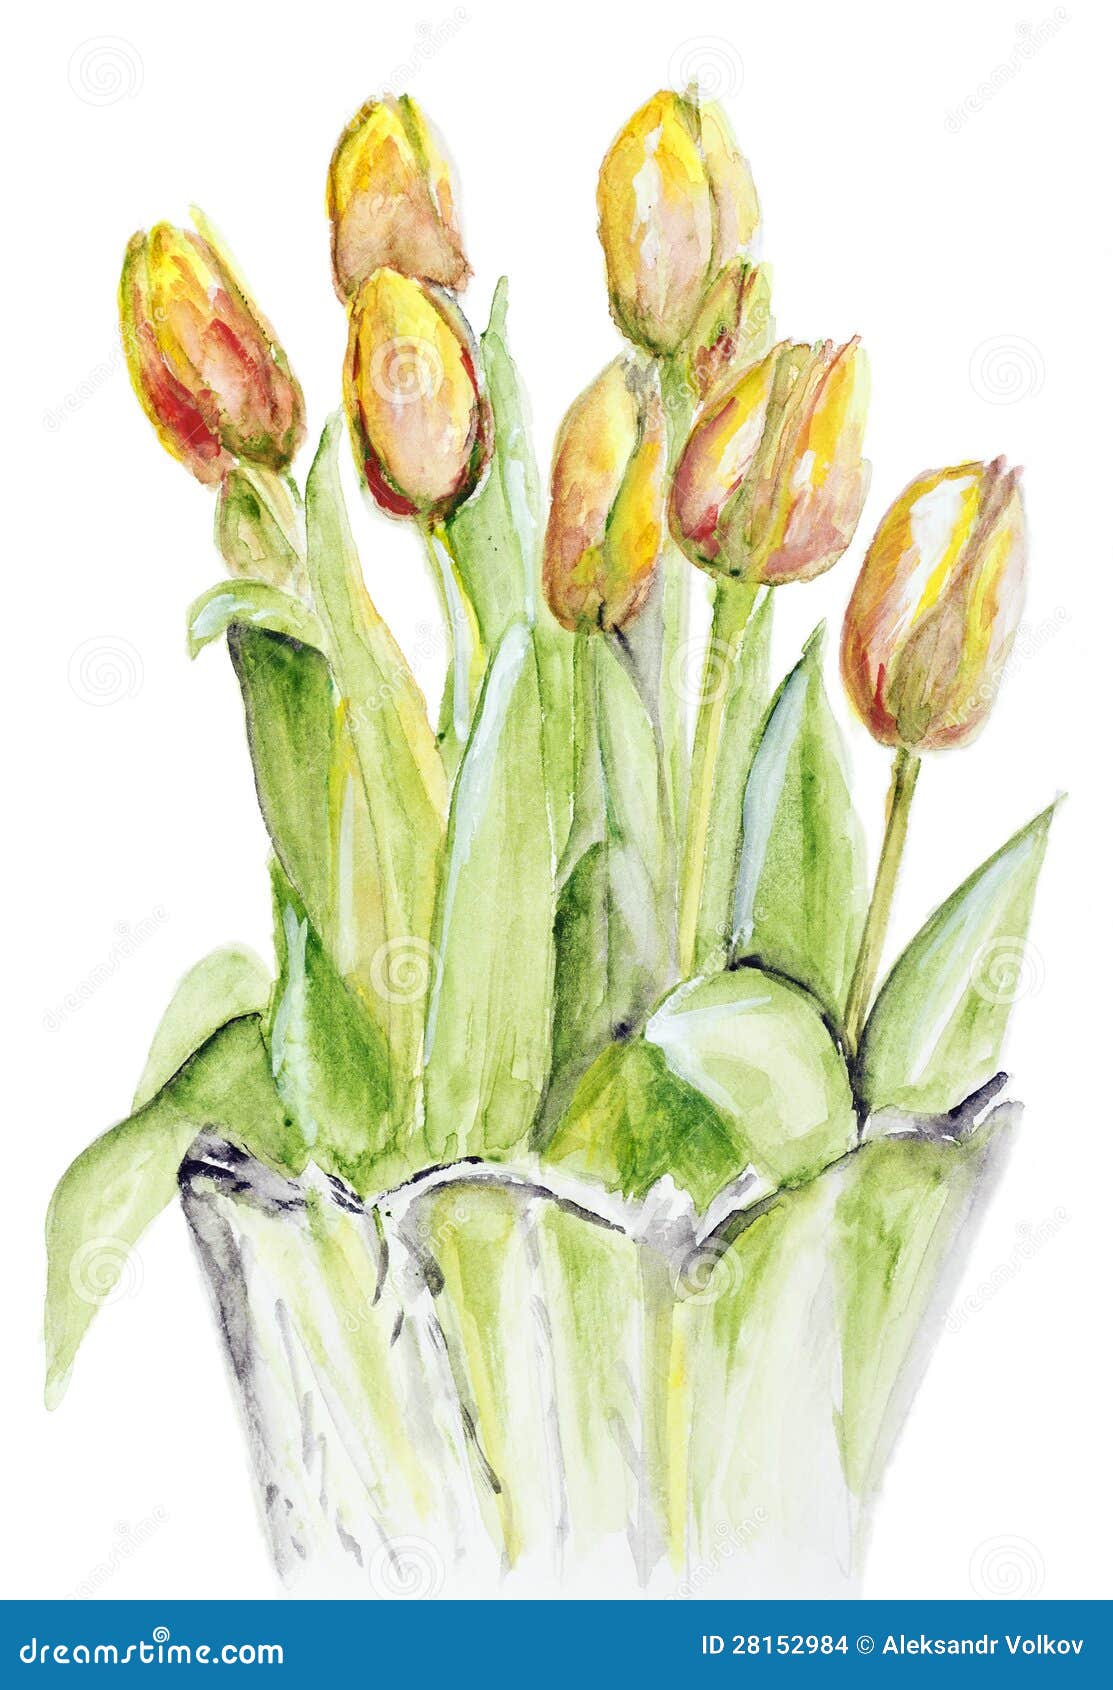 В изображенном на рисунке опыте тюльпан. Желтые тюльпаны акварель. Тюльпаны в хрустальной вазе акварель. Тюльпаны в вазе рисунок. Желтые тюльпаны в вазе рисунок.